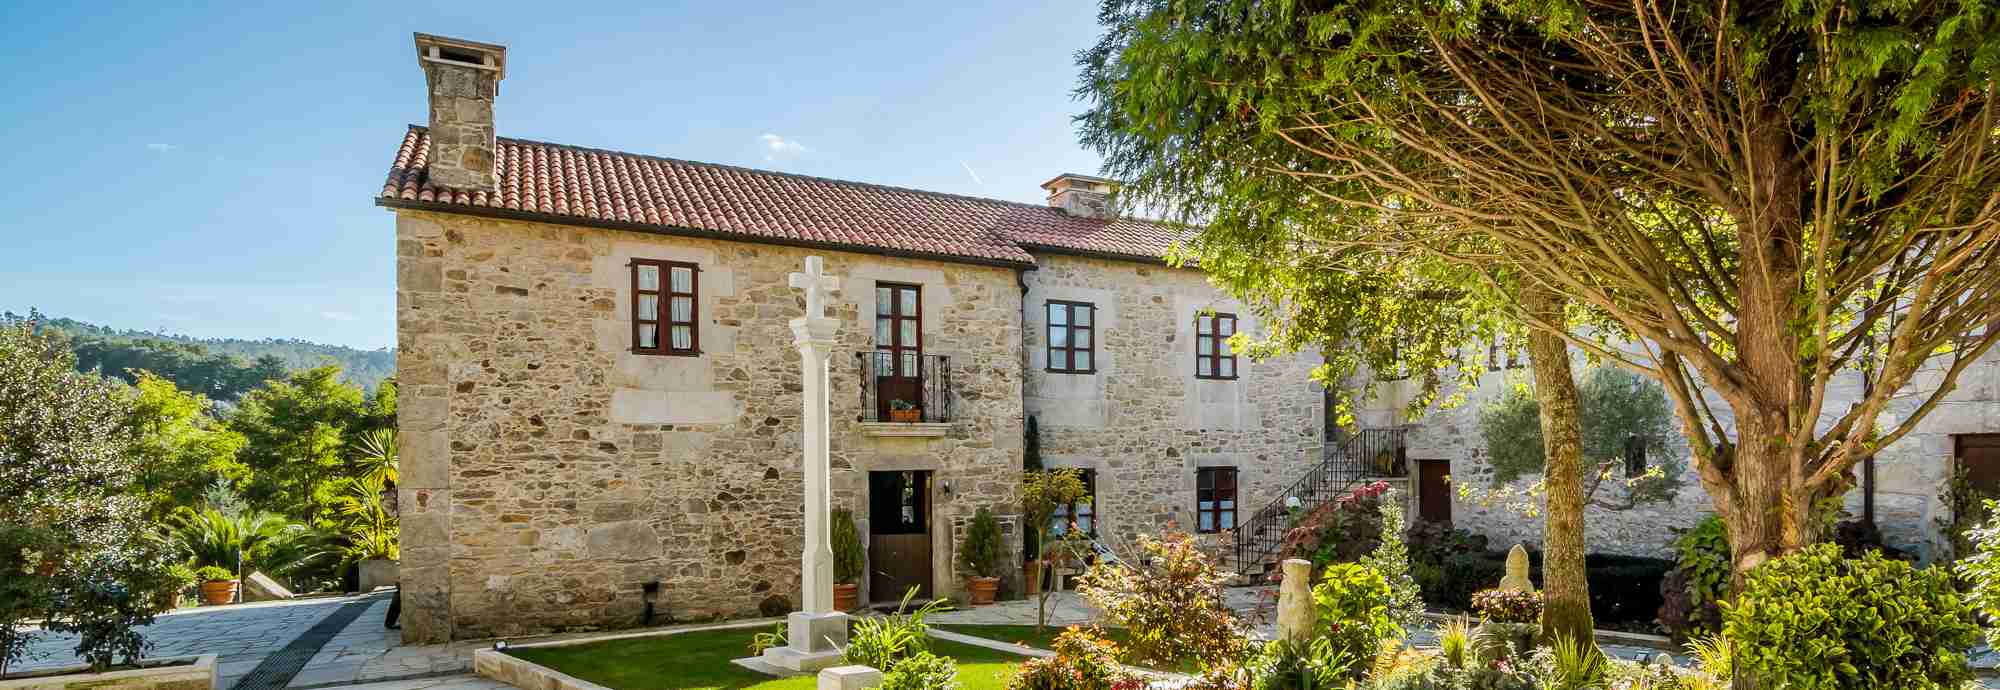 Gran casa de campo tradicional con super piscina y jardines en aldea gallega